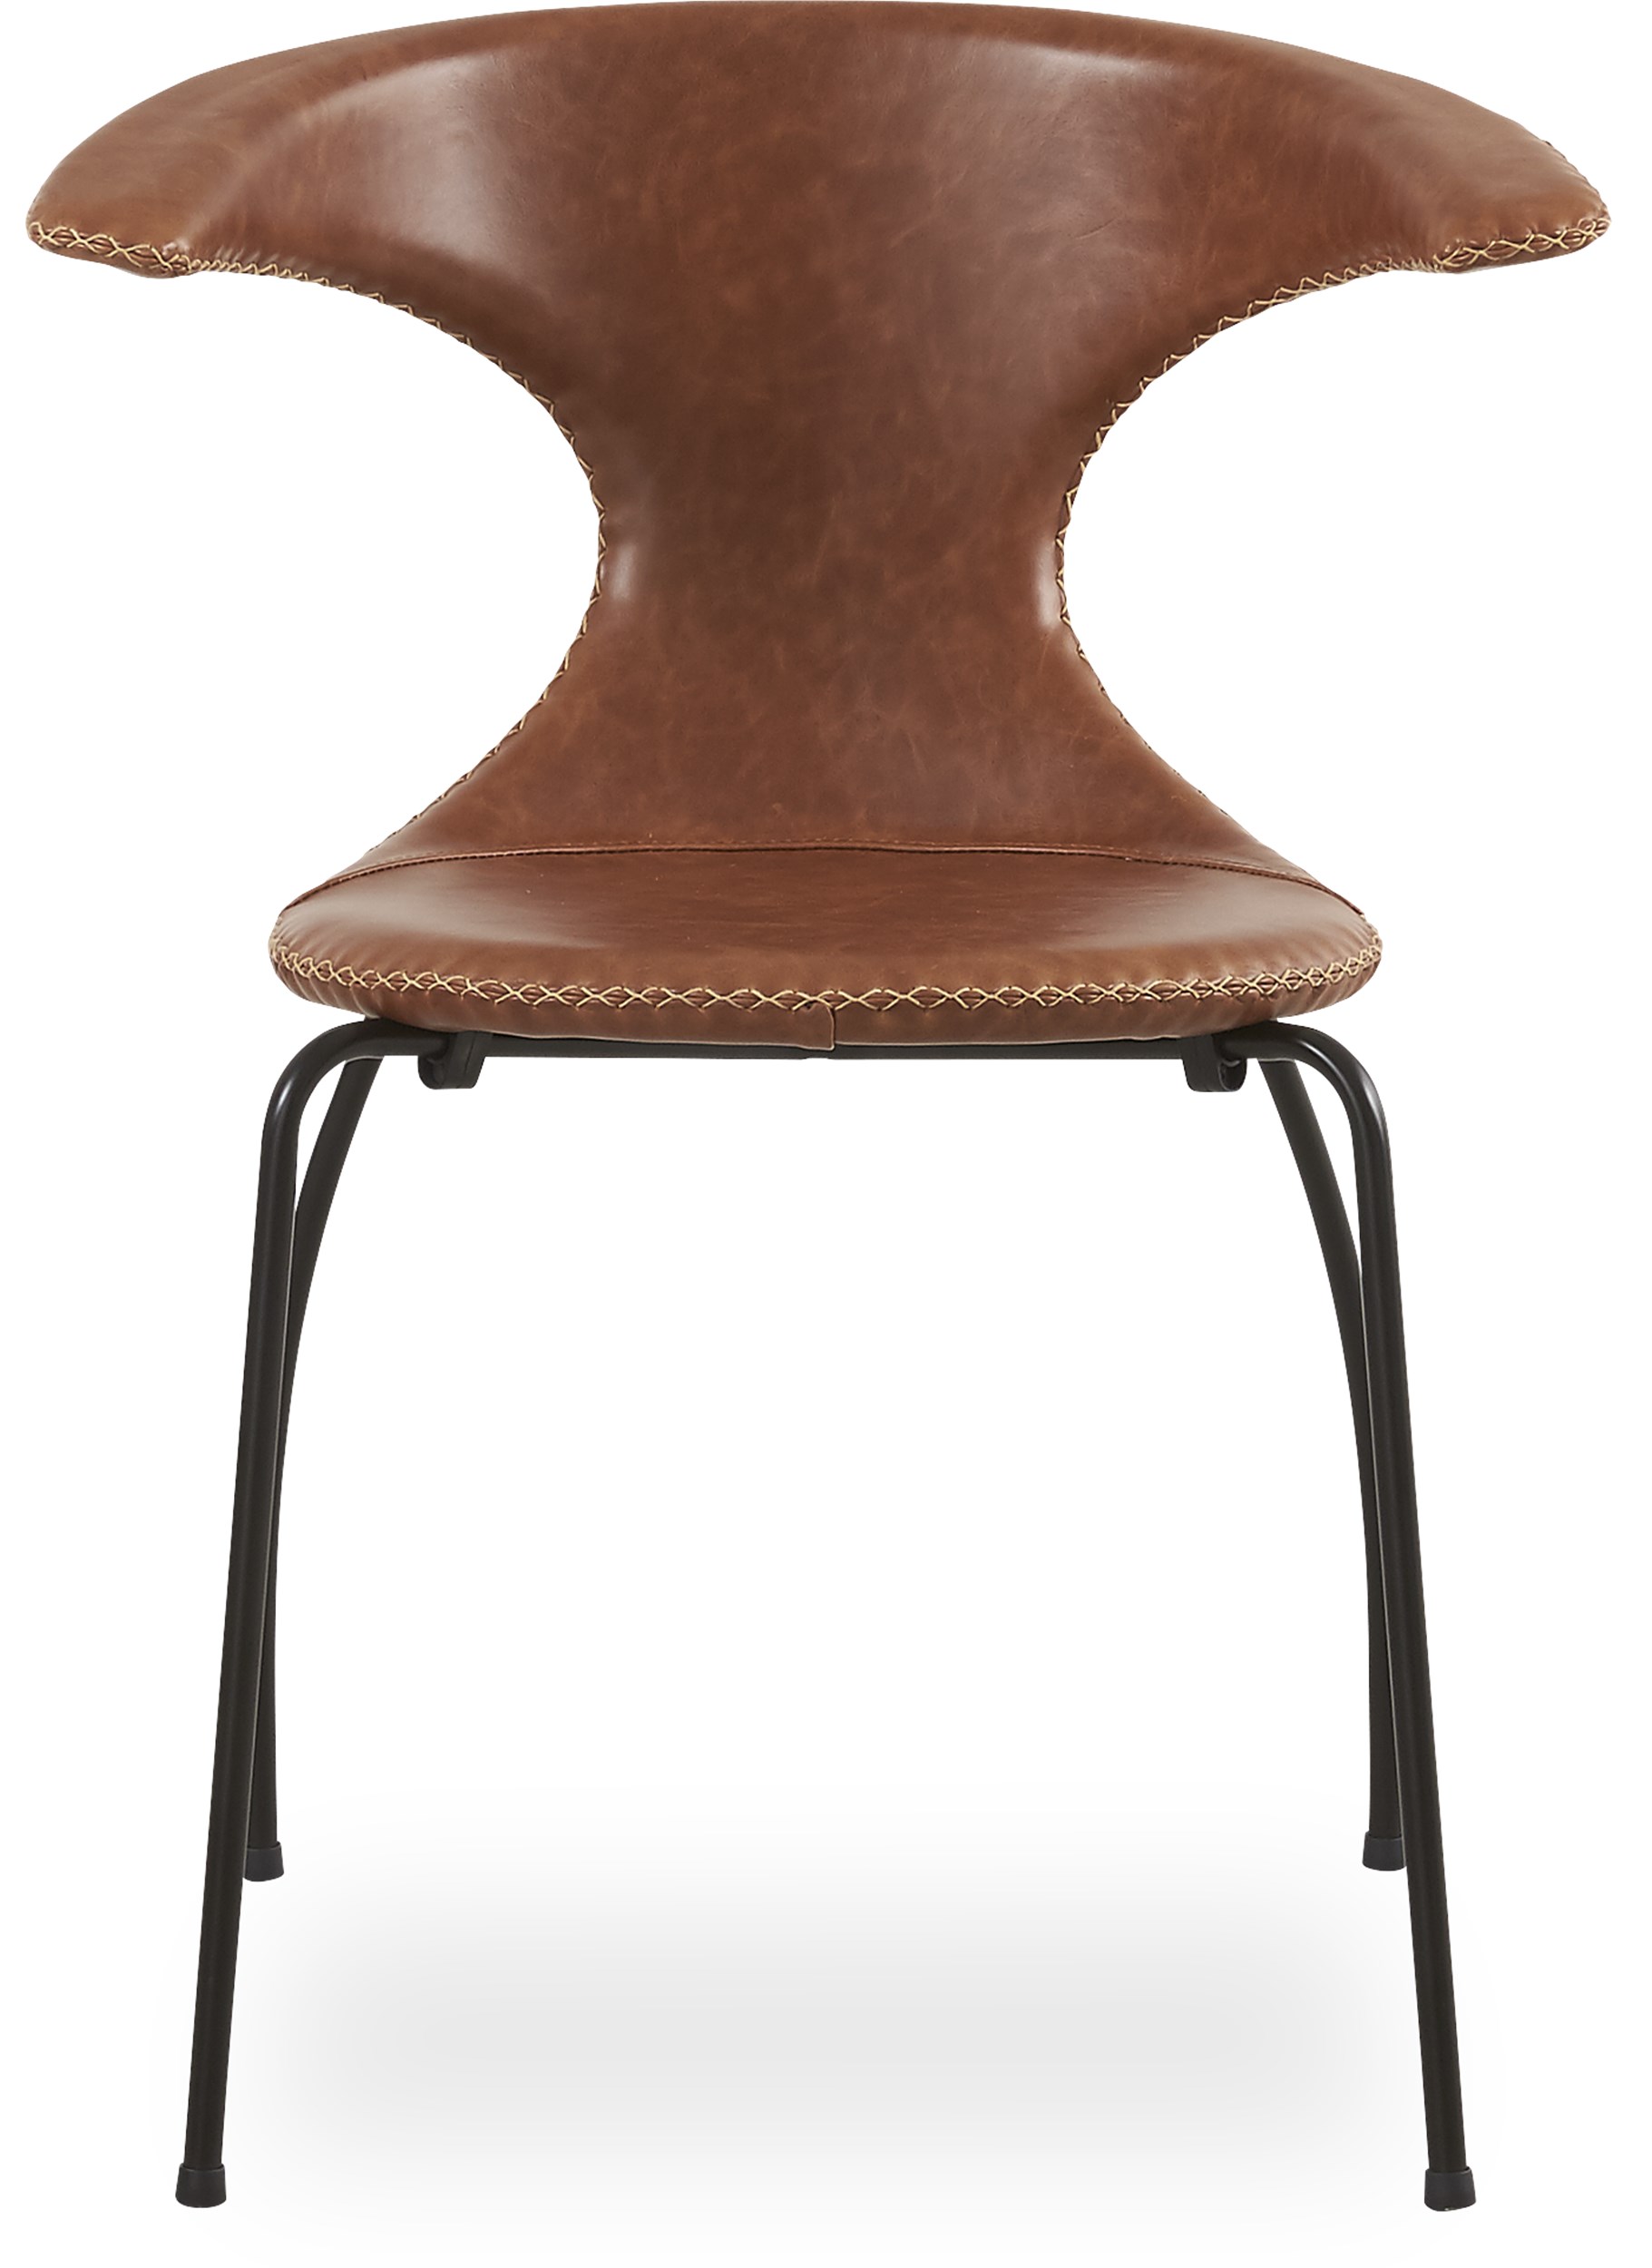 Flaire matstol - Brunt läder med kontrastsöm och ben i svartlackerad metall